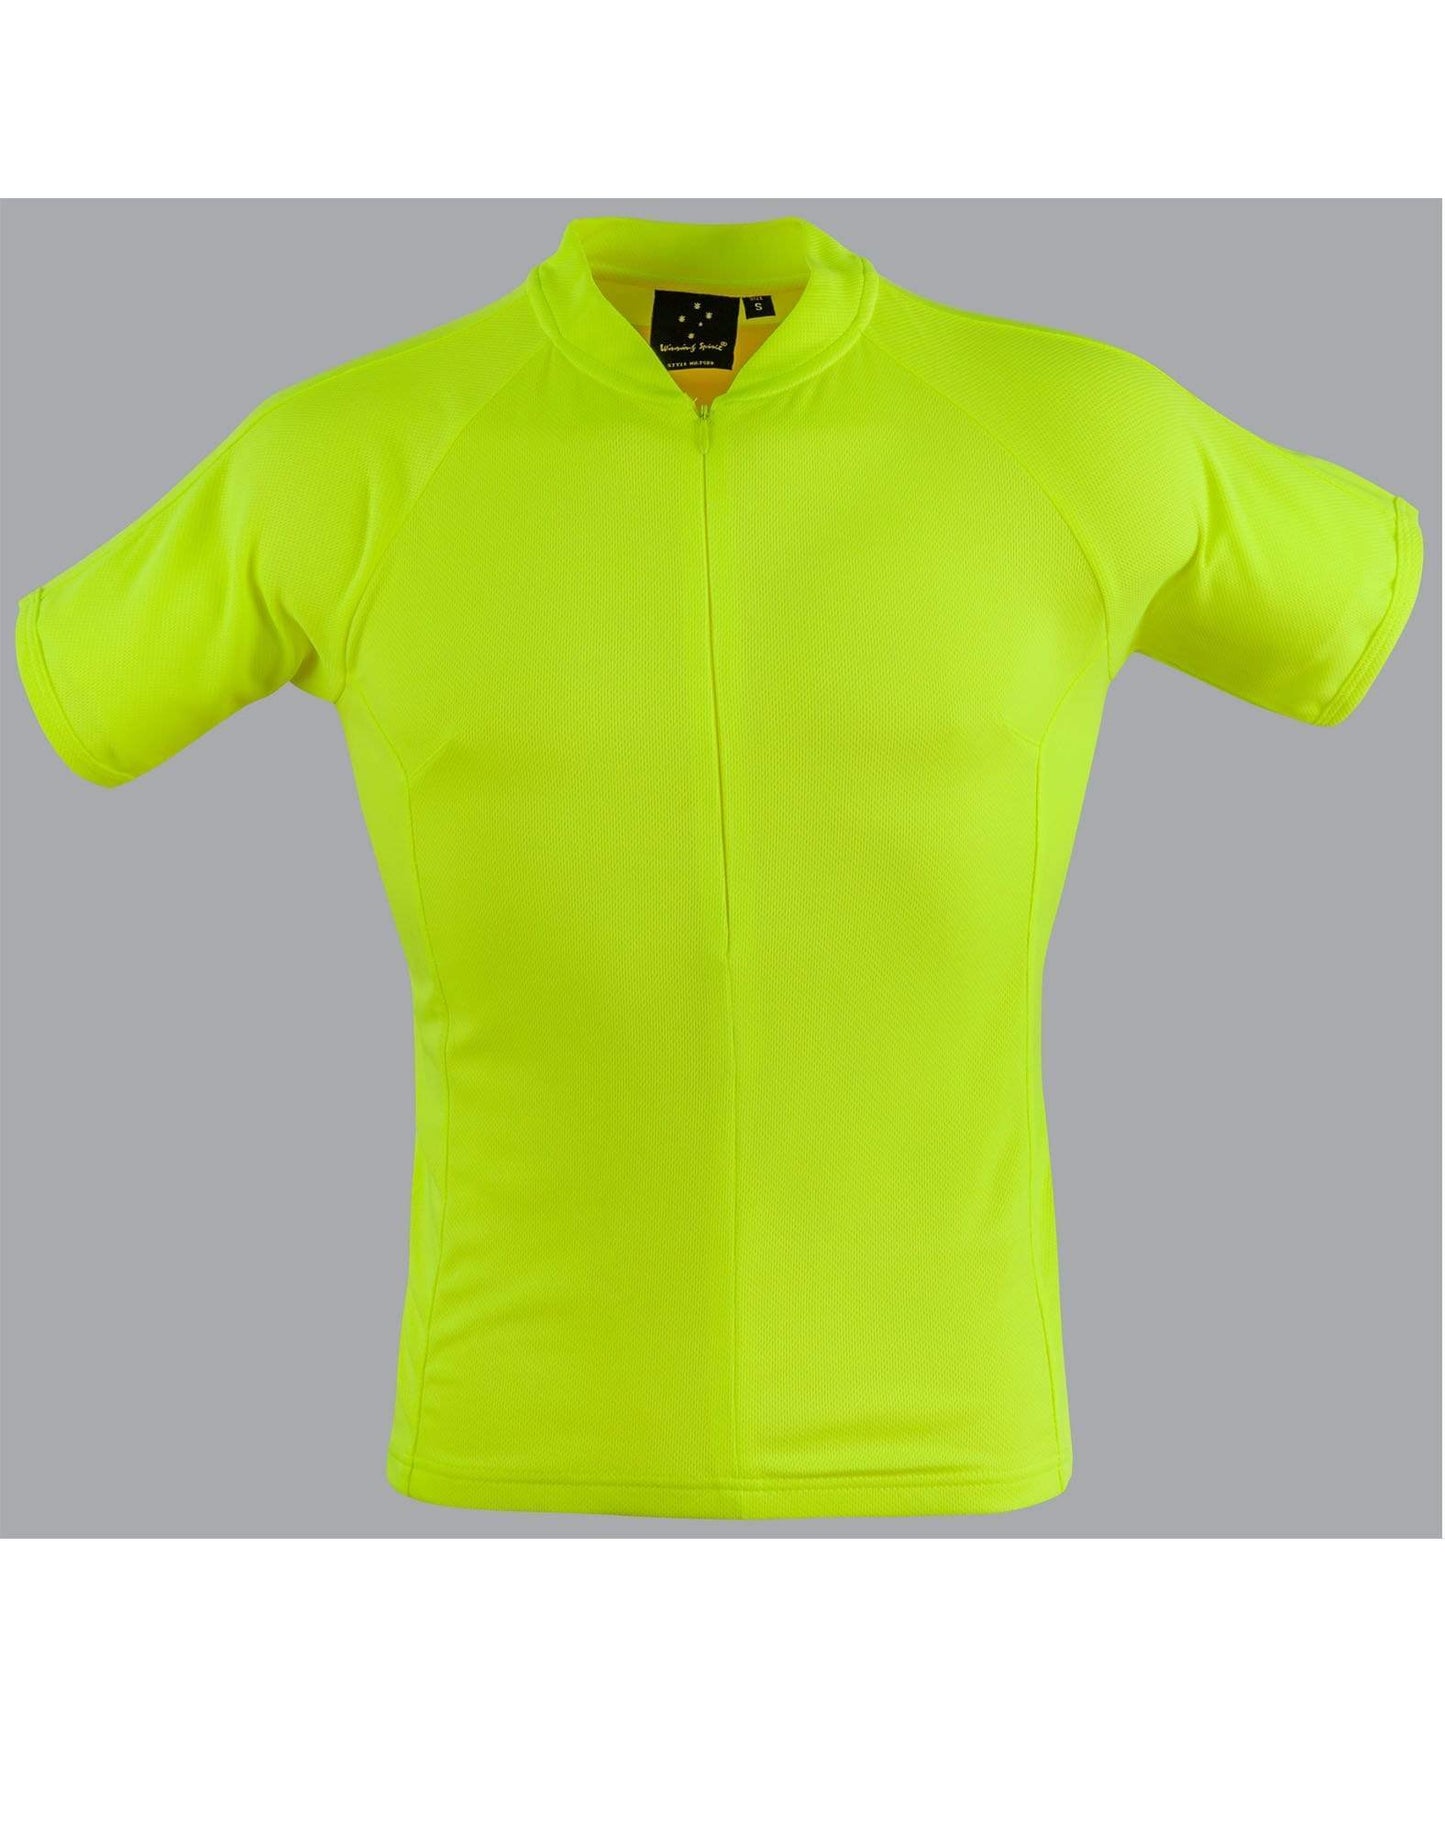 Cycling Top Ts89 Casual Wear Winning Spirit Fluoro yellow 2XS/8 